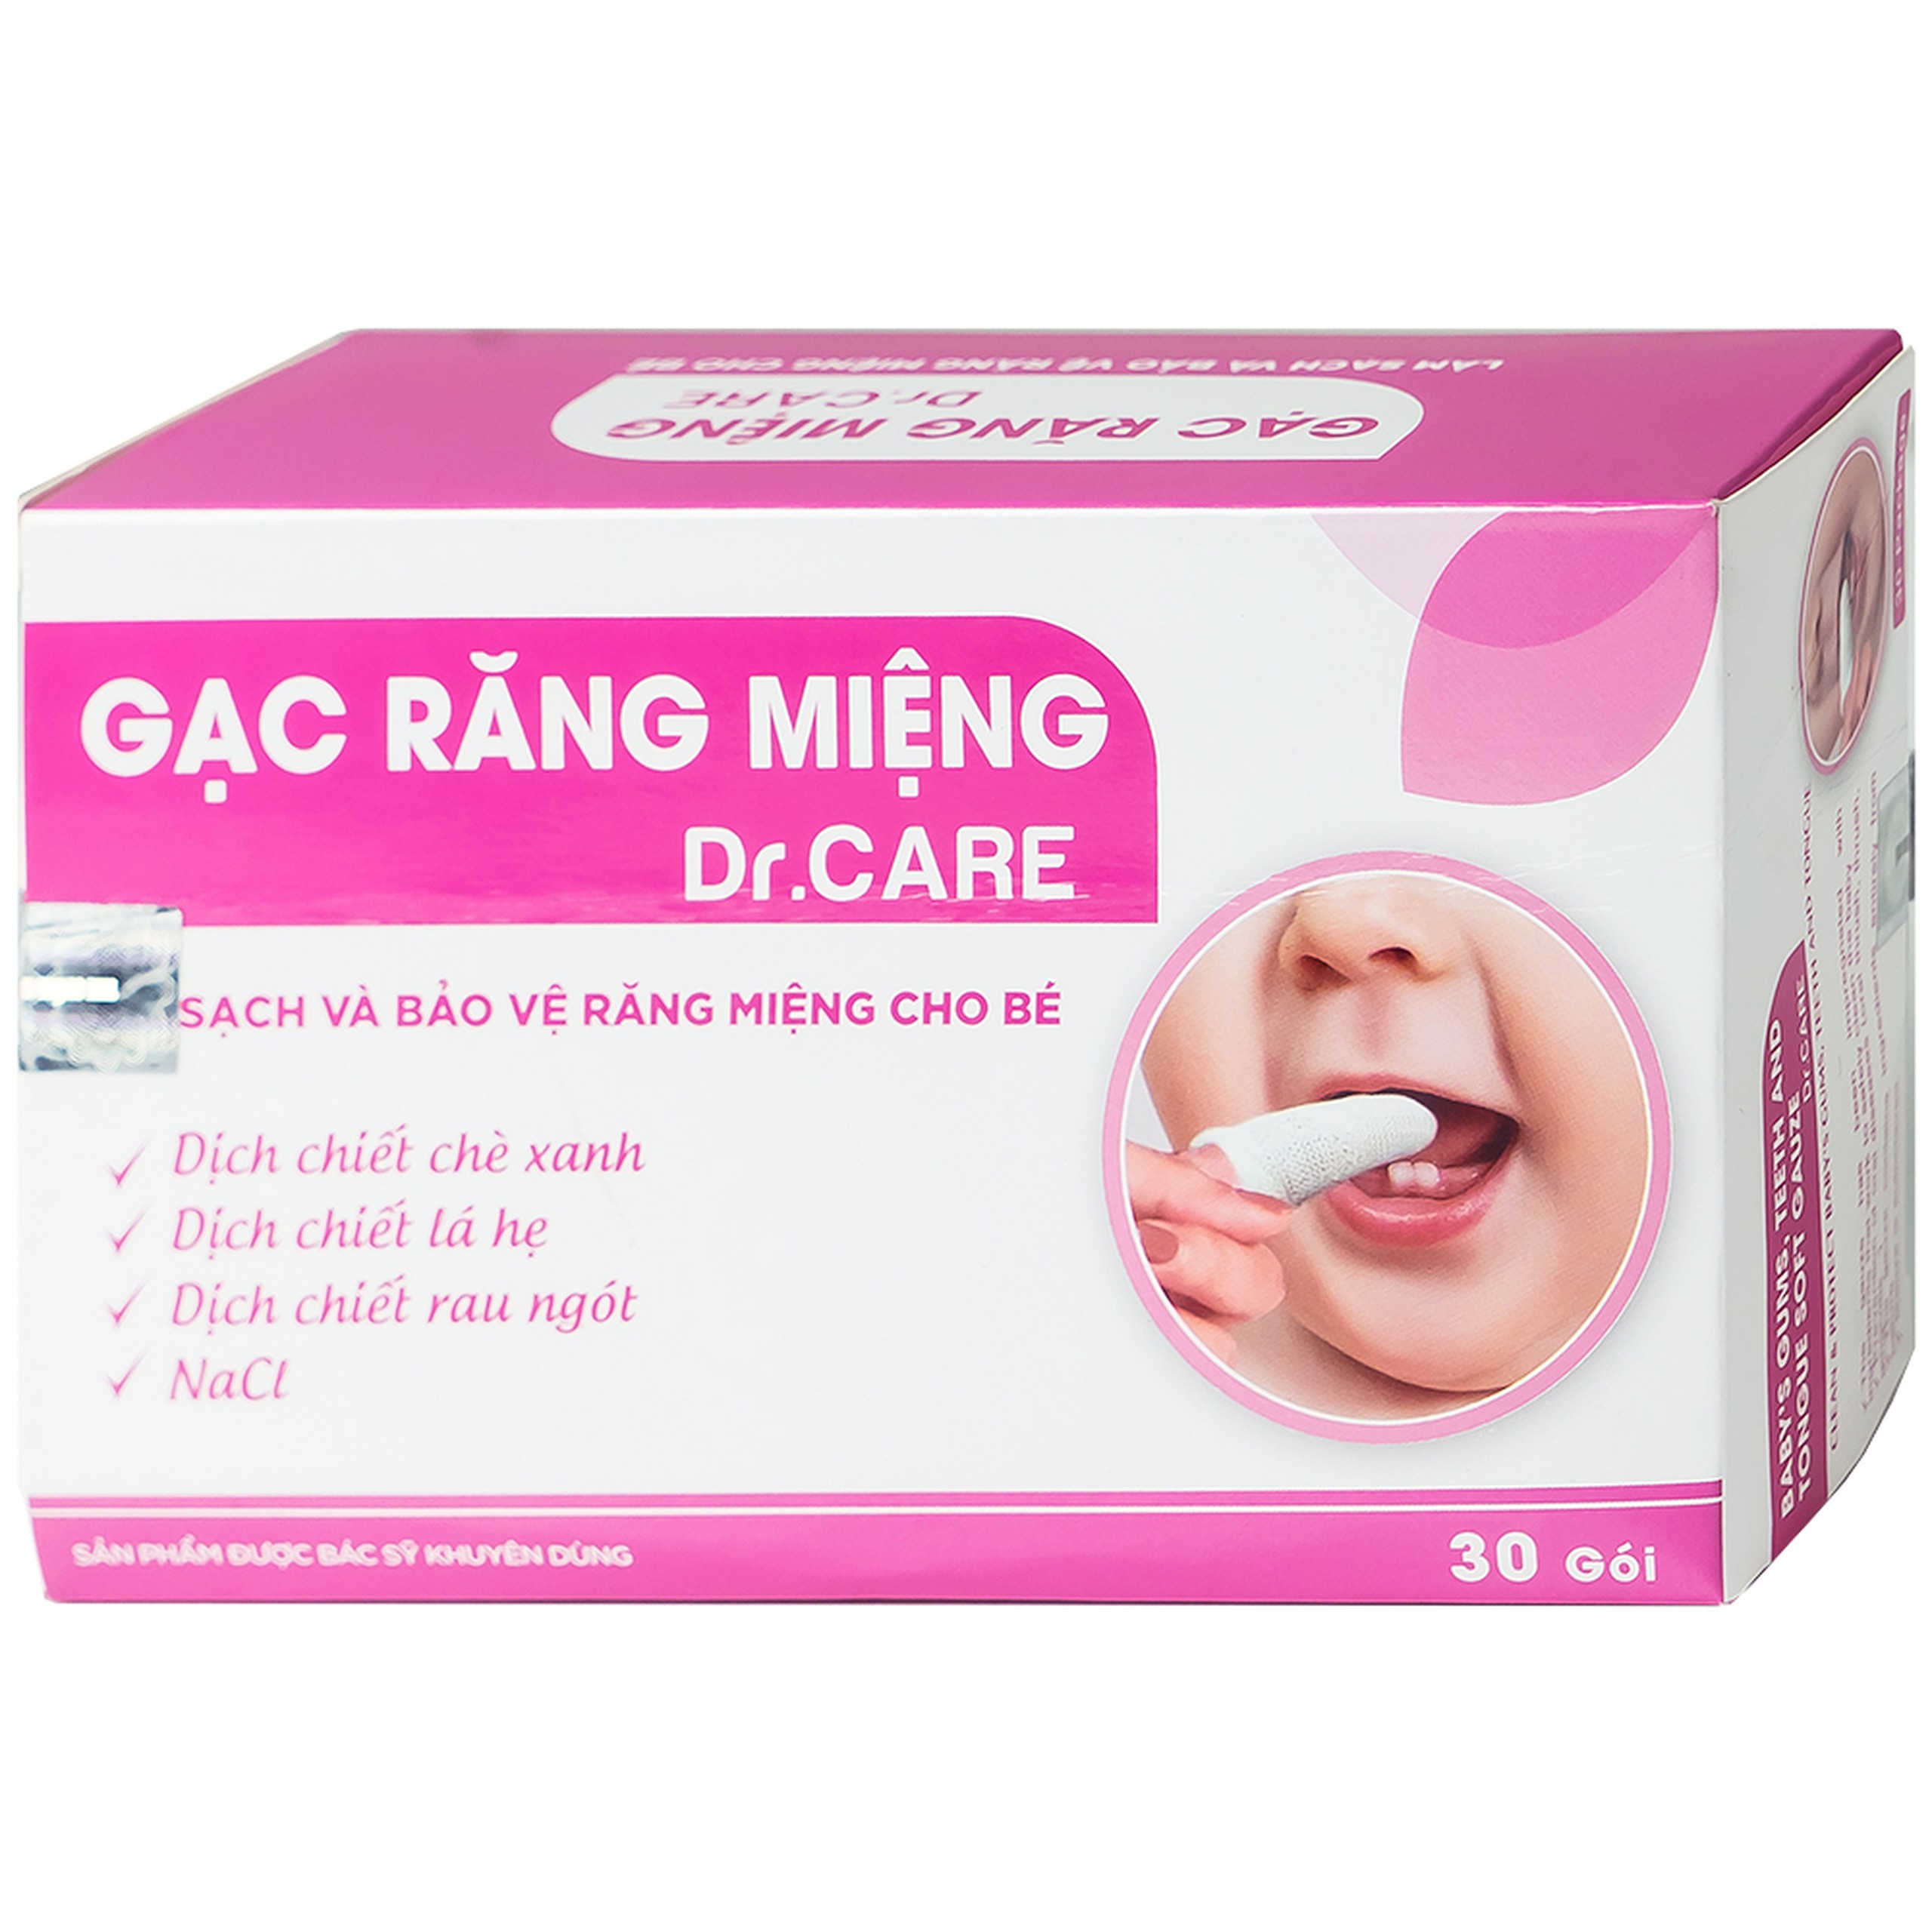 Gạc răng miệng Dr. Care Quang Xanh làm sạch lưỡi, nướu, răng, miệng cho trẻ từ sơ sinh trở lên (30 gói)